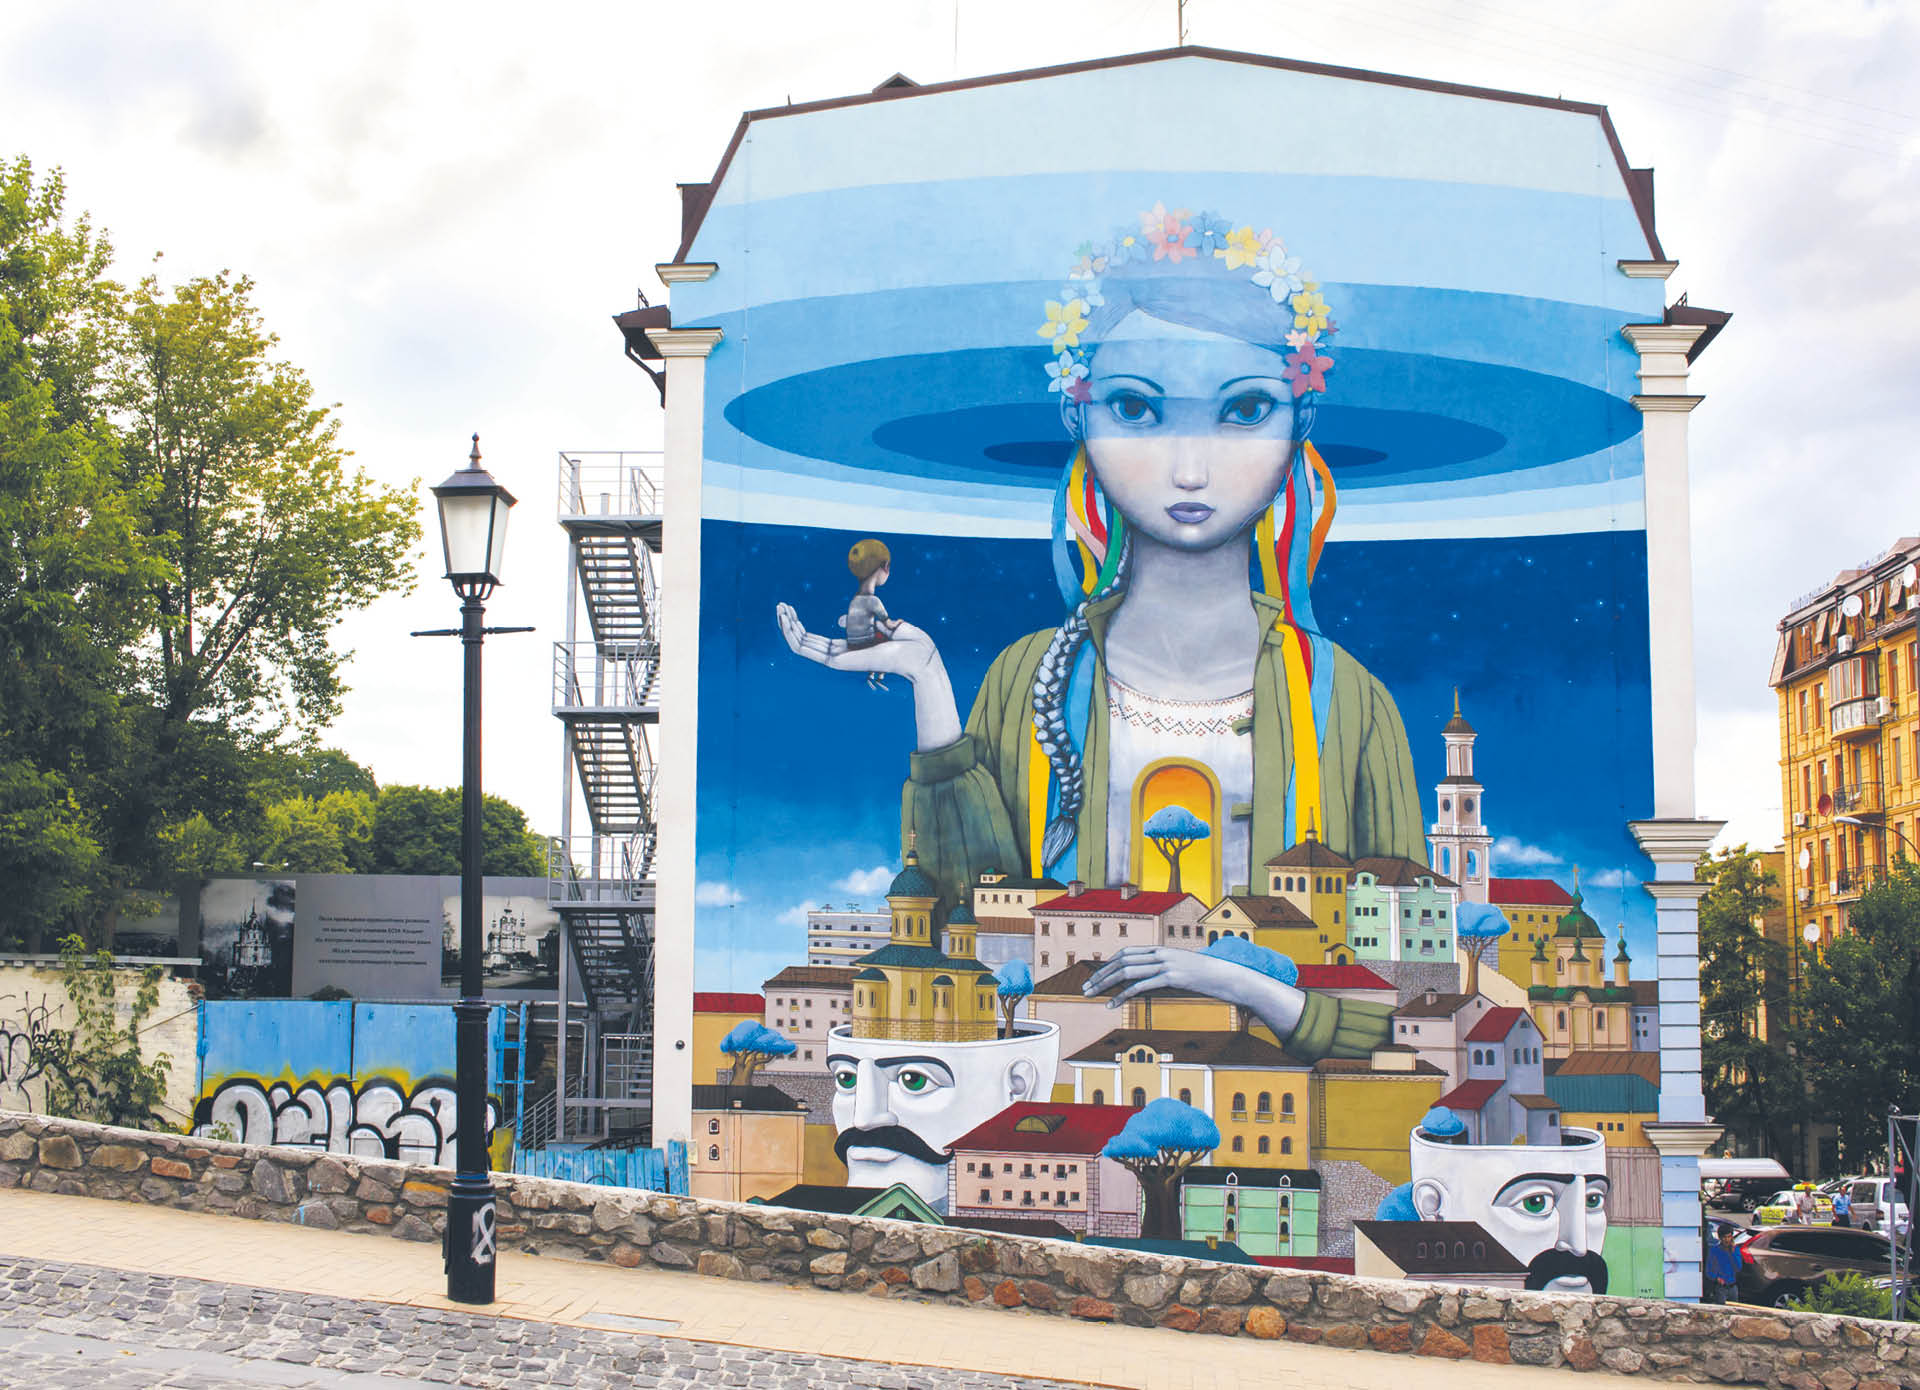 Mural “Revival of Ukraine ” at Andriyivsky Uzvizstreet of Kyiv